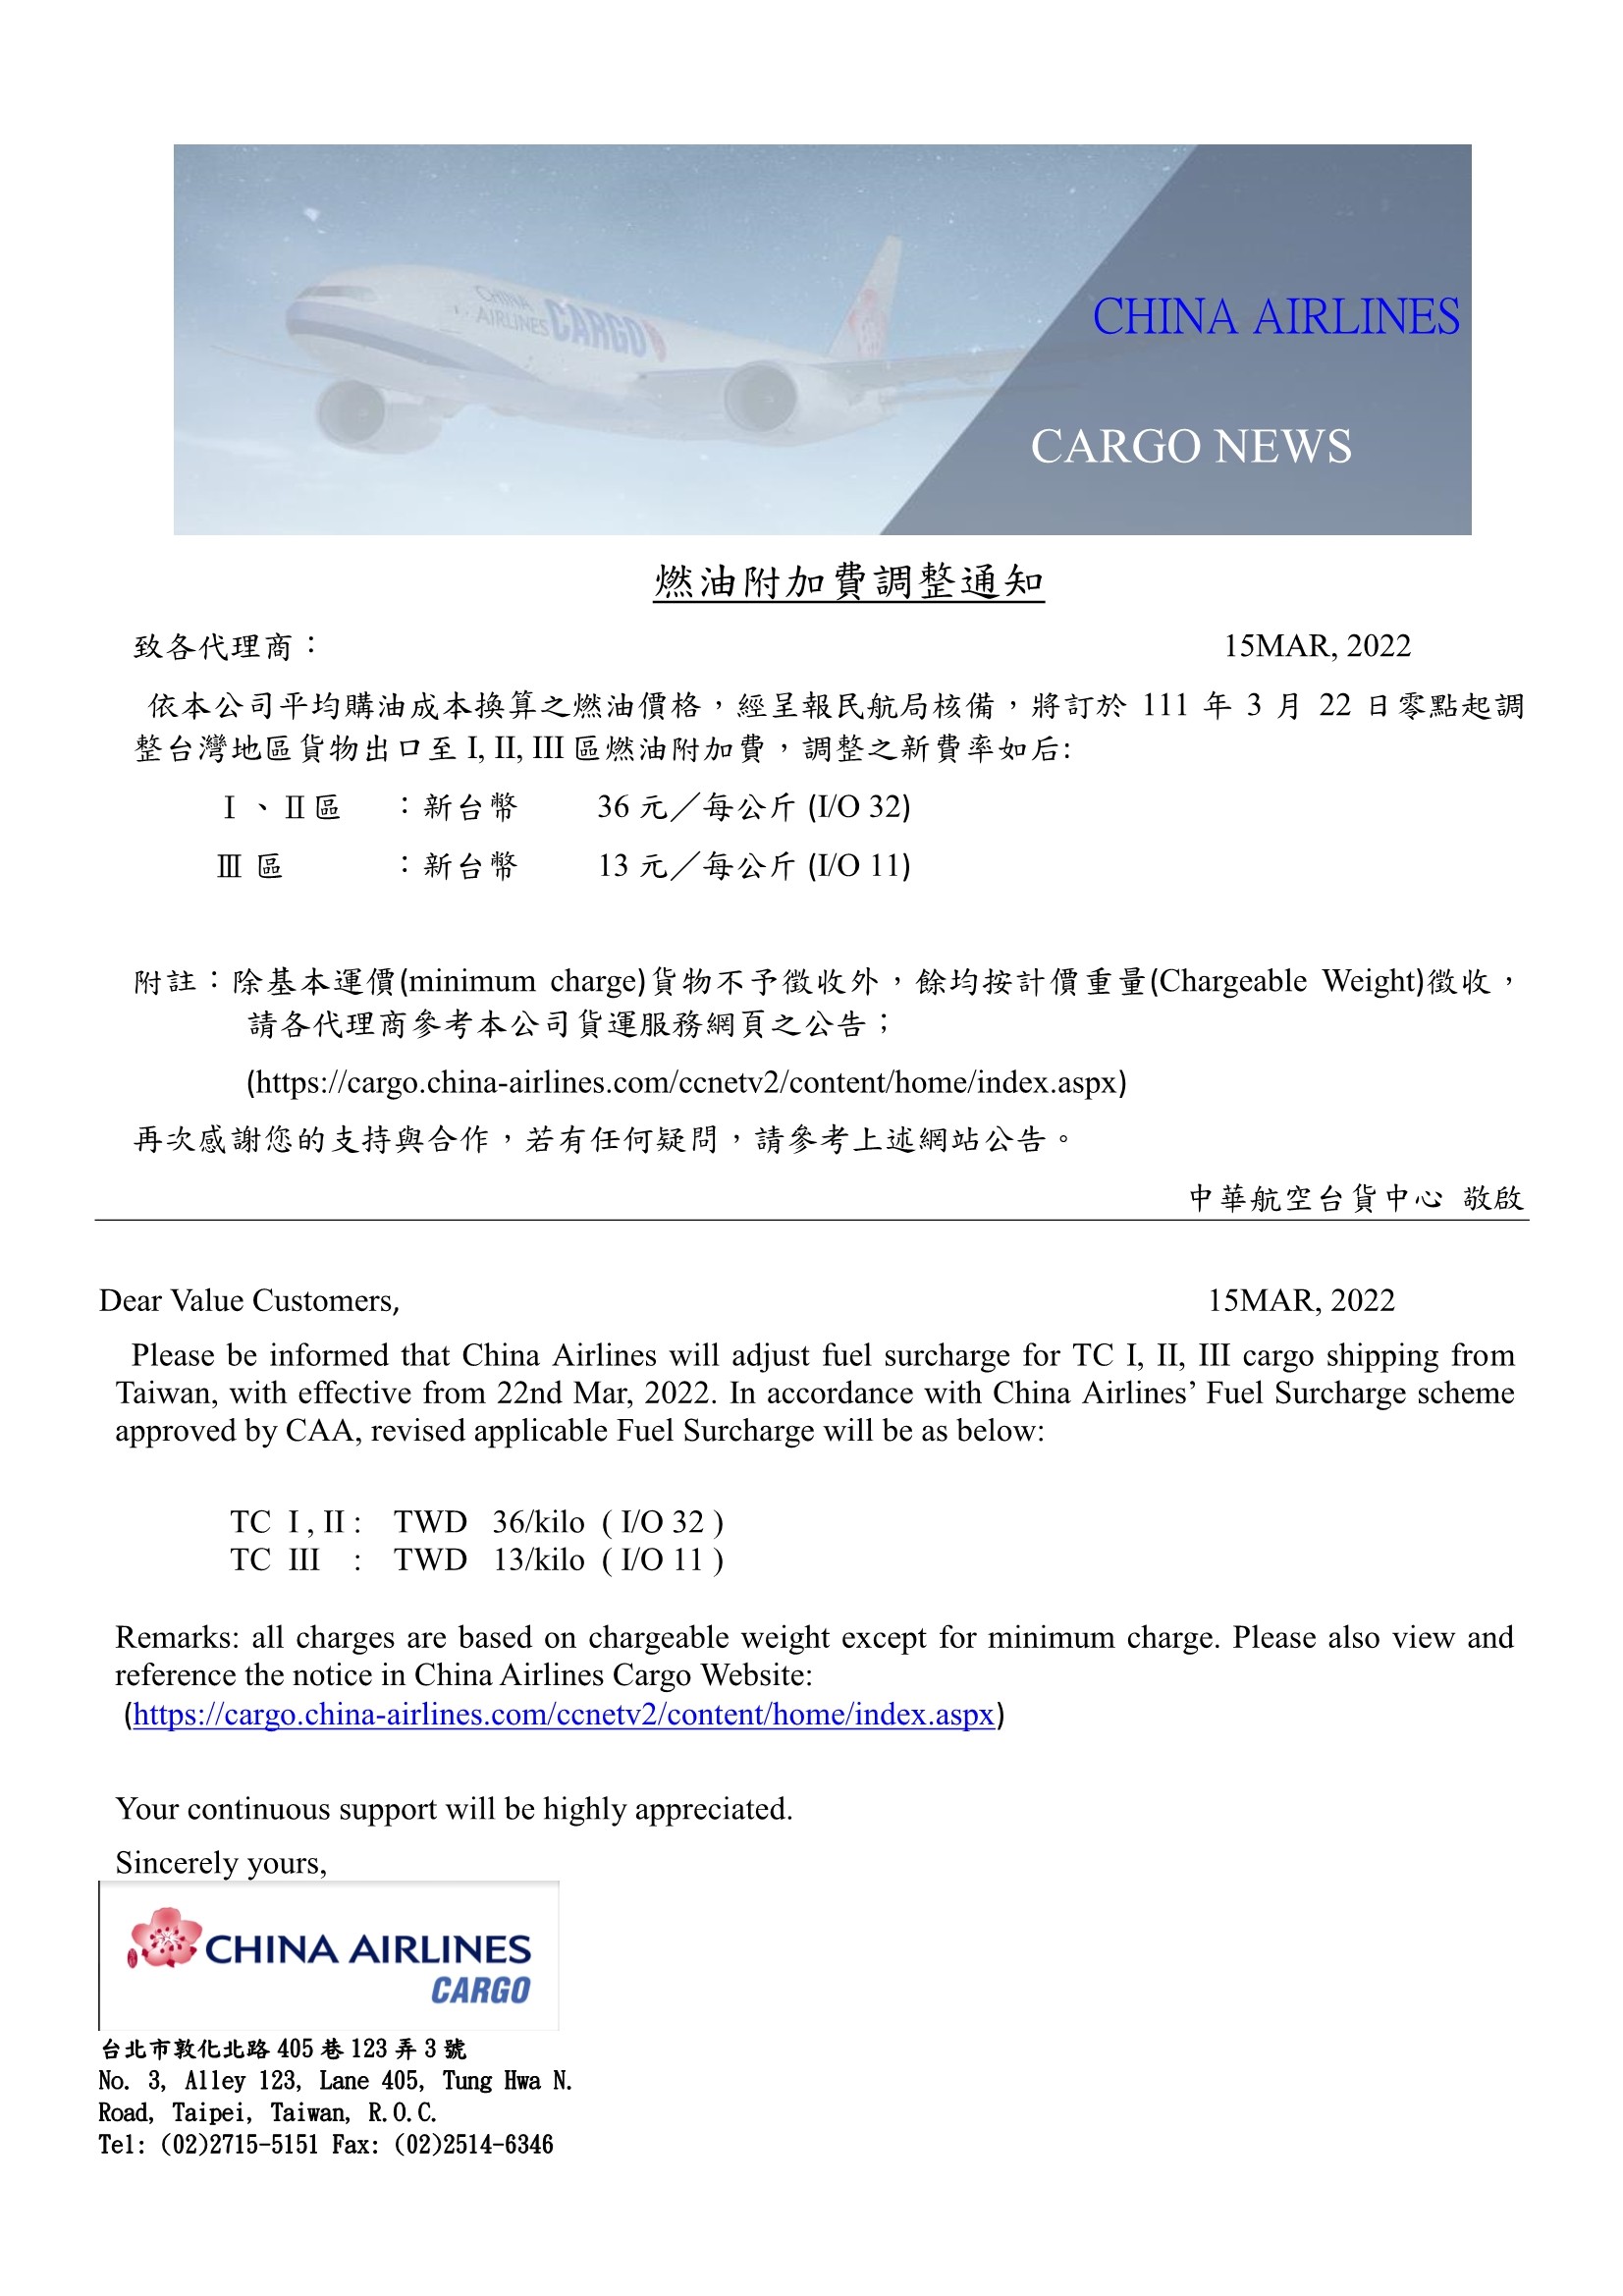 中華航空2022年3月22日台灣區貨運燃油附加費調整公告.jpg